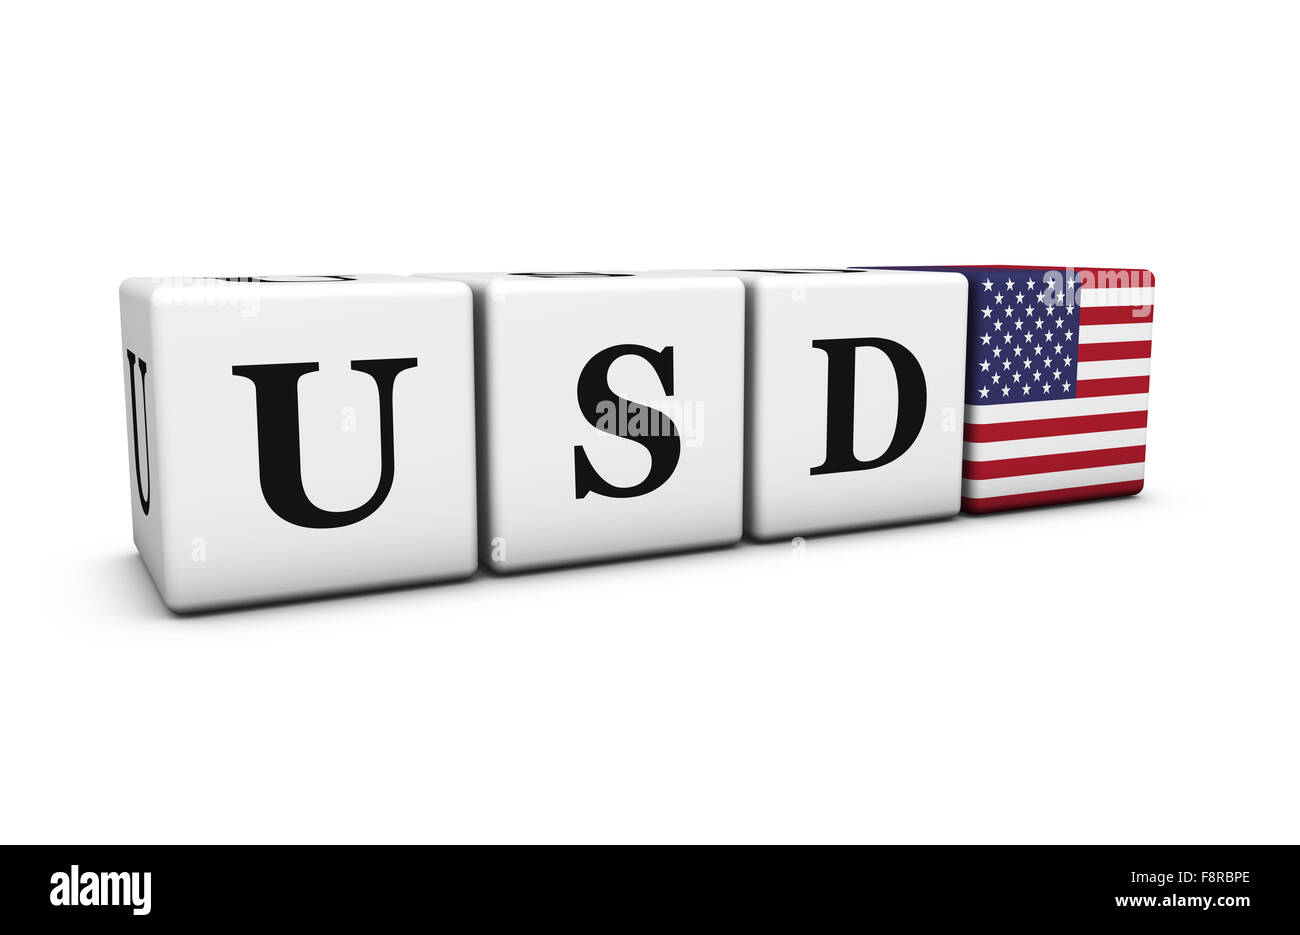 Wechselkurse, austauschen Börse und trading Finanzkonzept mit Dollar-usd-Code-Zeichen und US-Flagge auf Würfel. Stockfoto